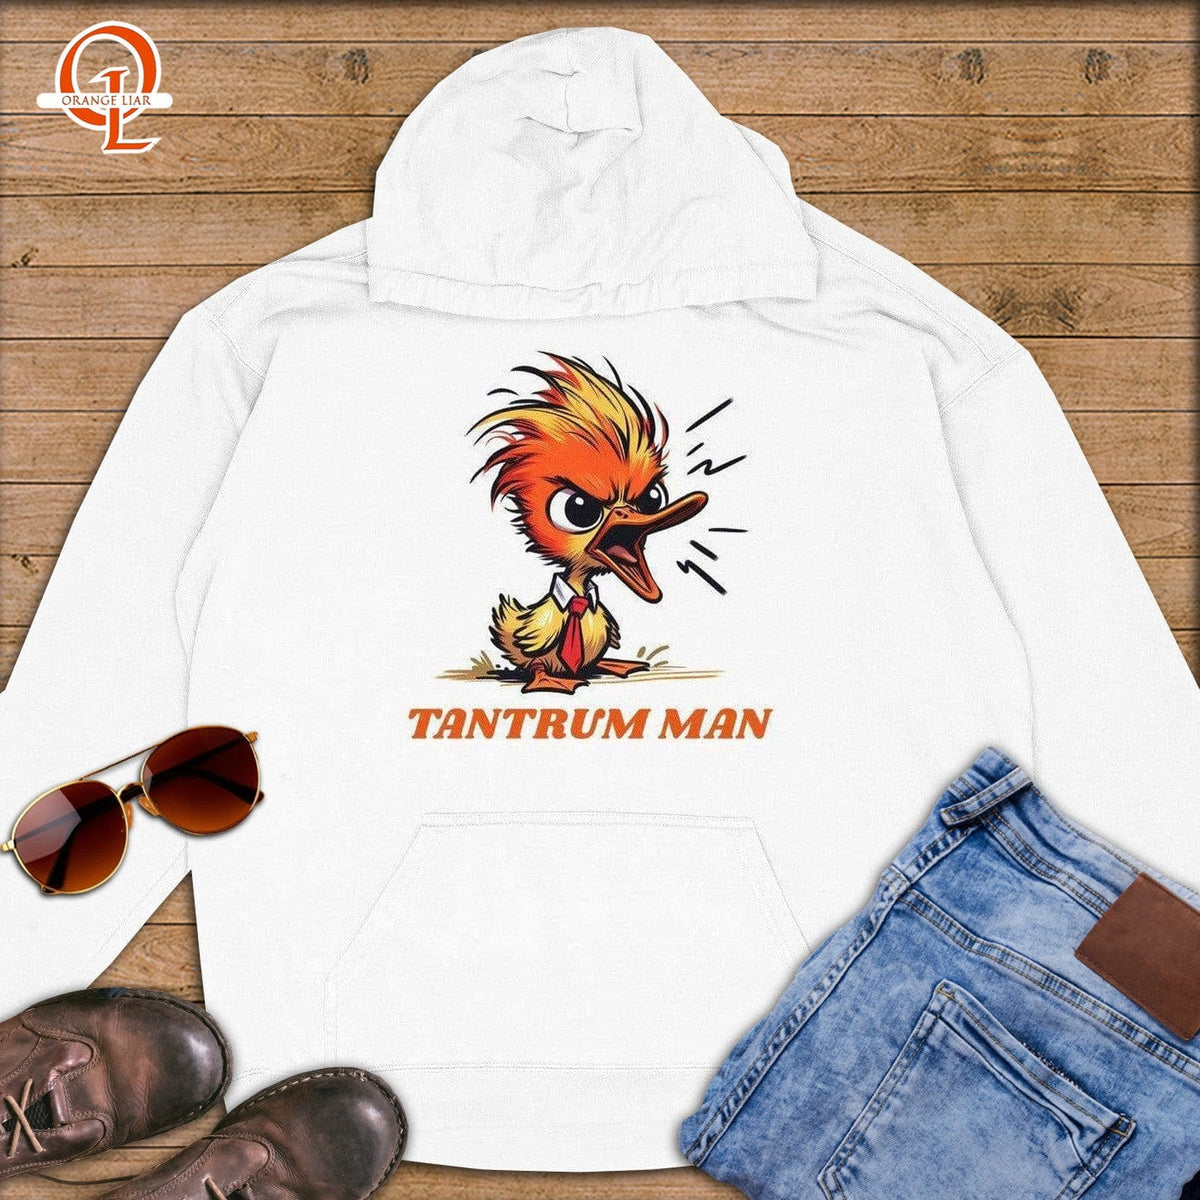 Tantrum Man ~ Premium Hoodie-Orange Liar